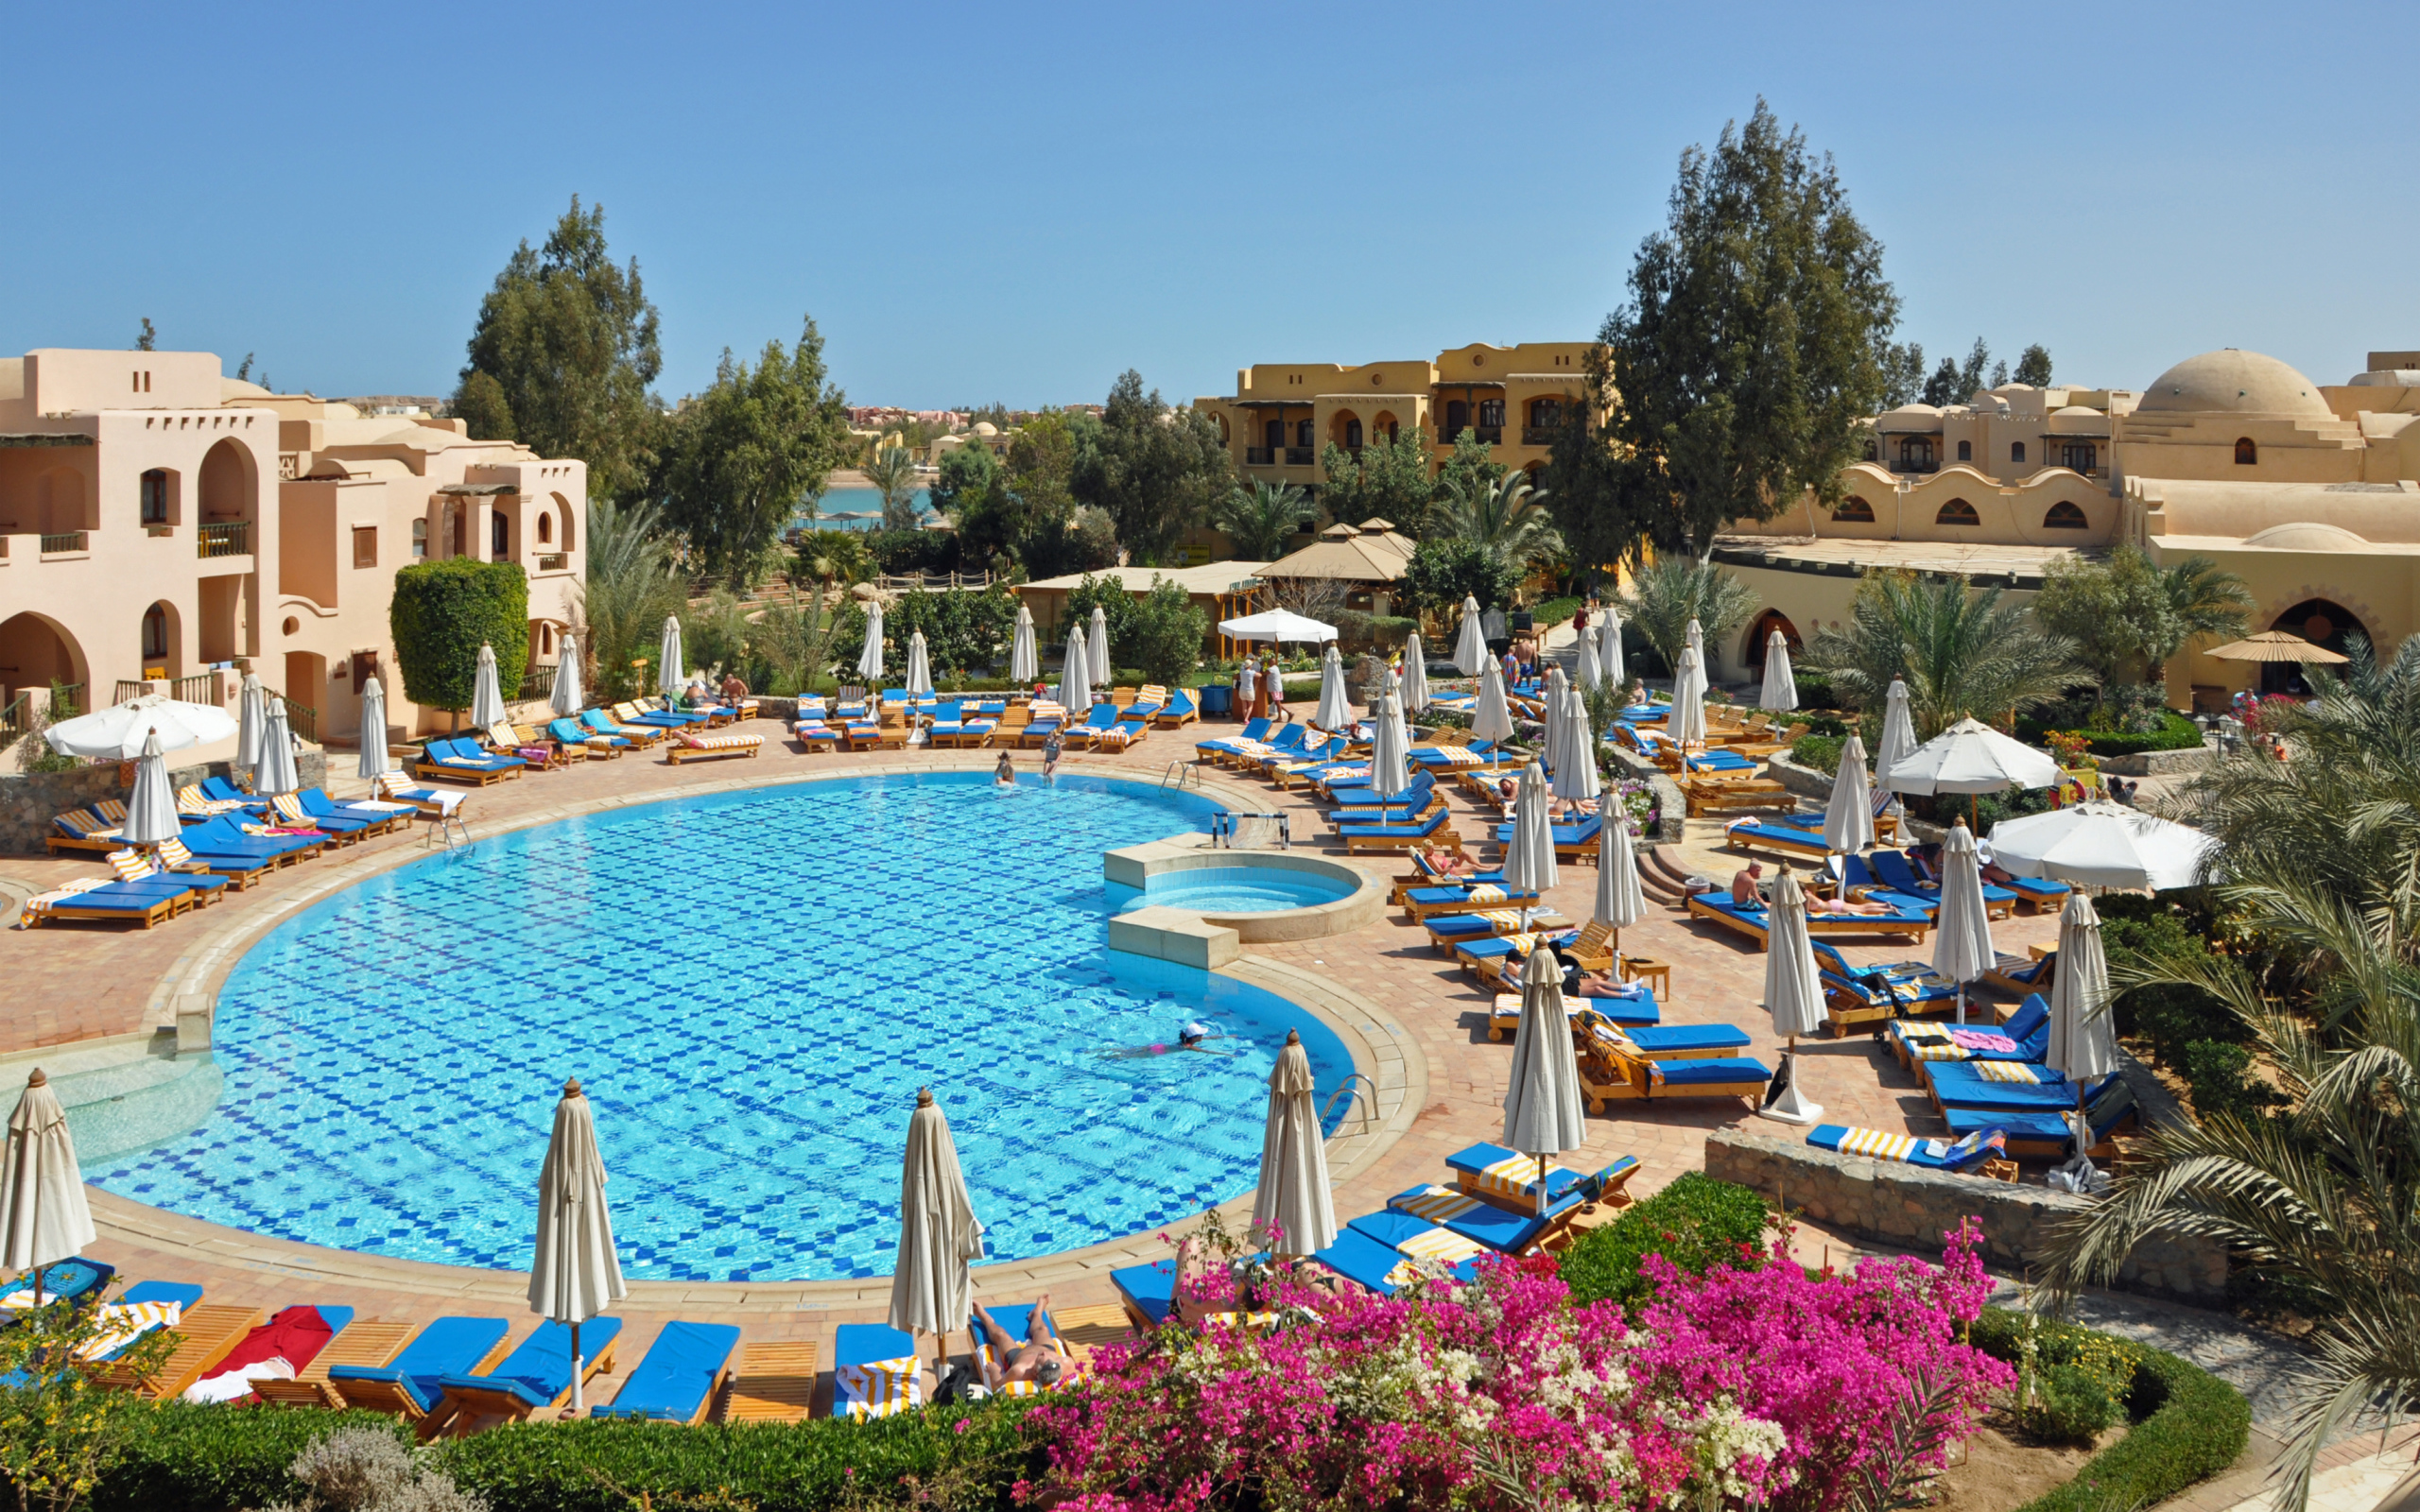 Бассейн в отеле на курорте Эль Гуна, Египет